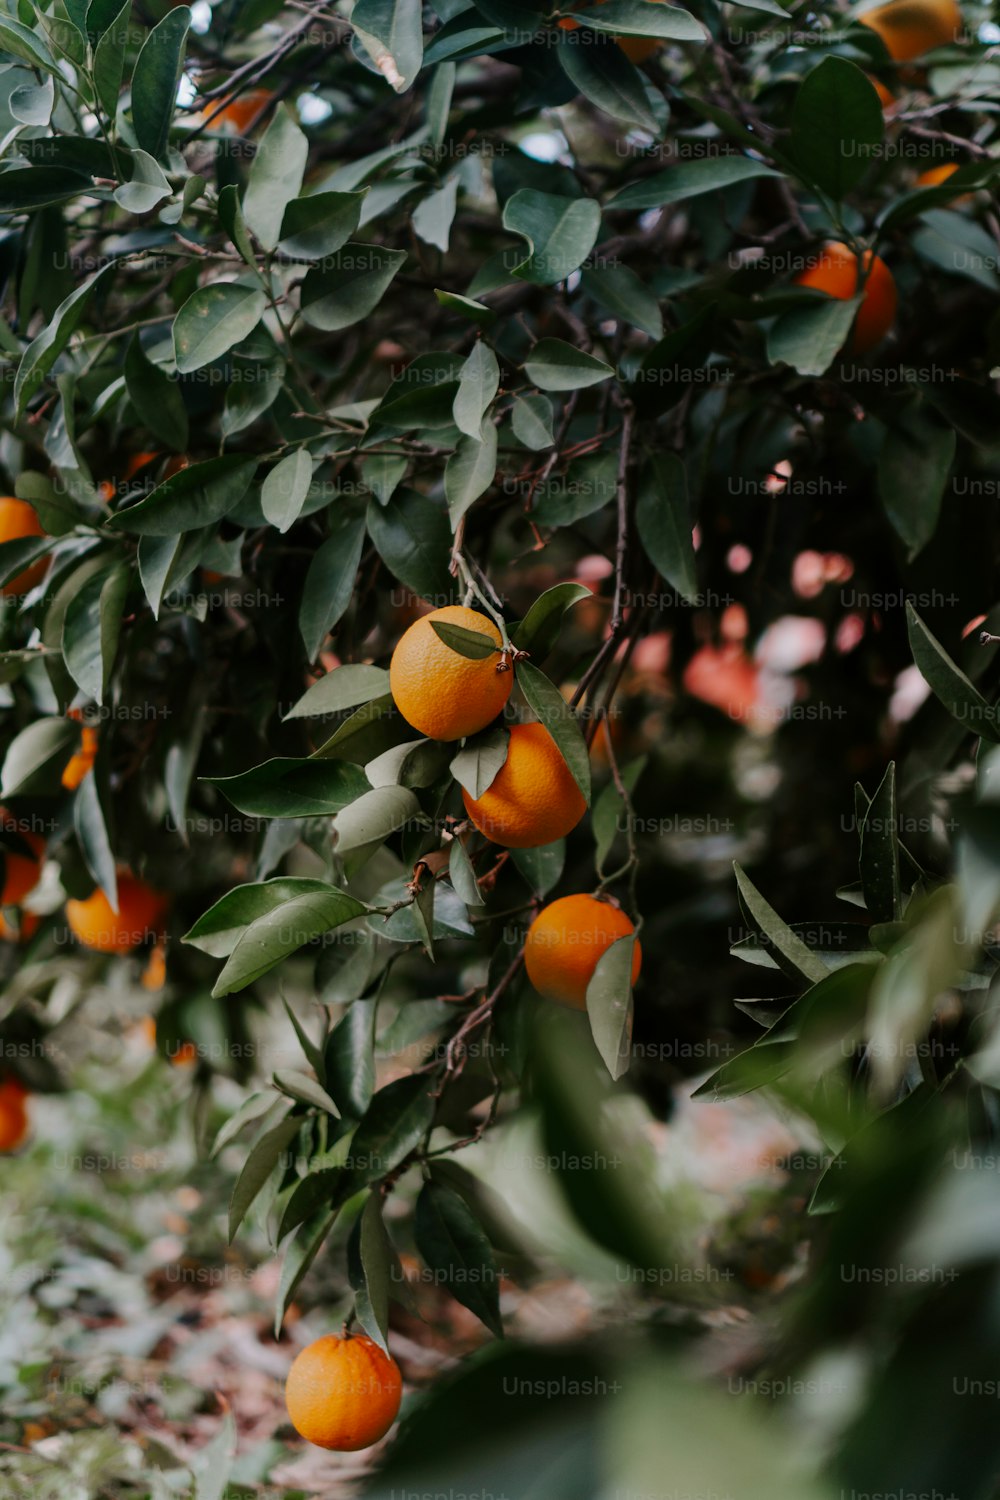 Un arbre rempli de beaucoup d’oranges mûres